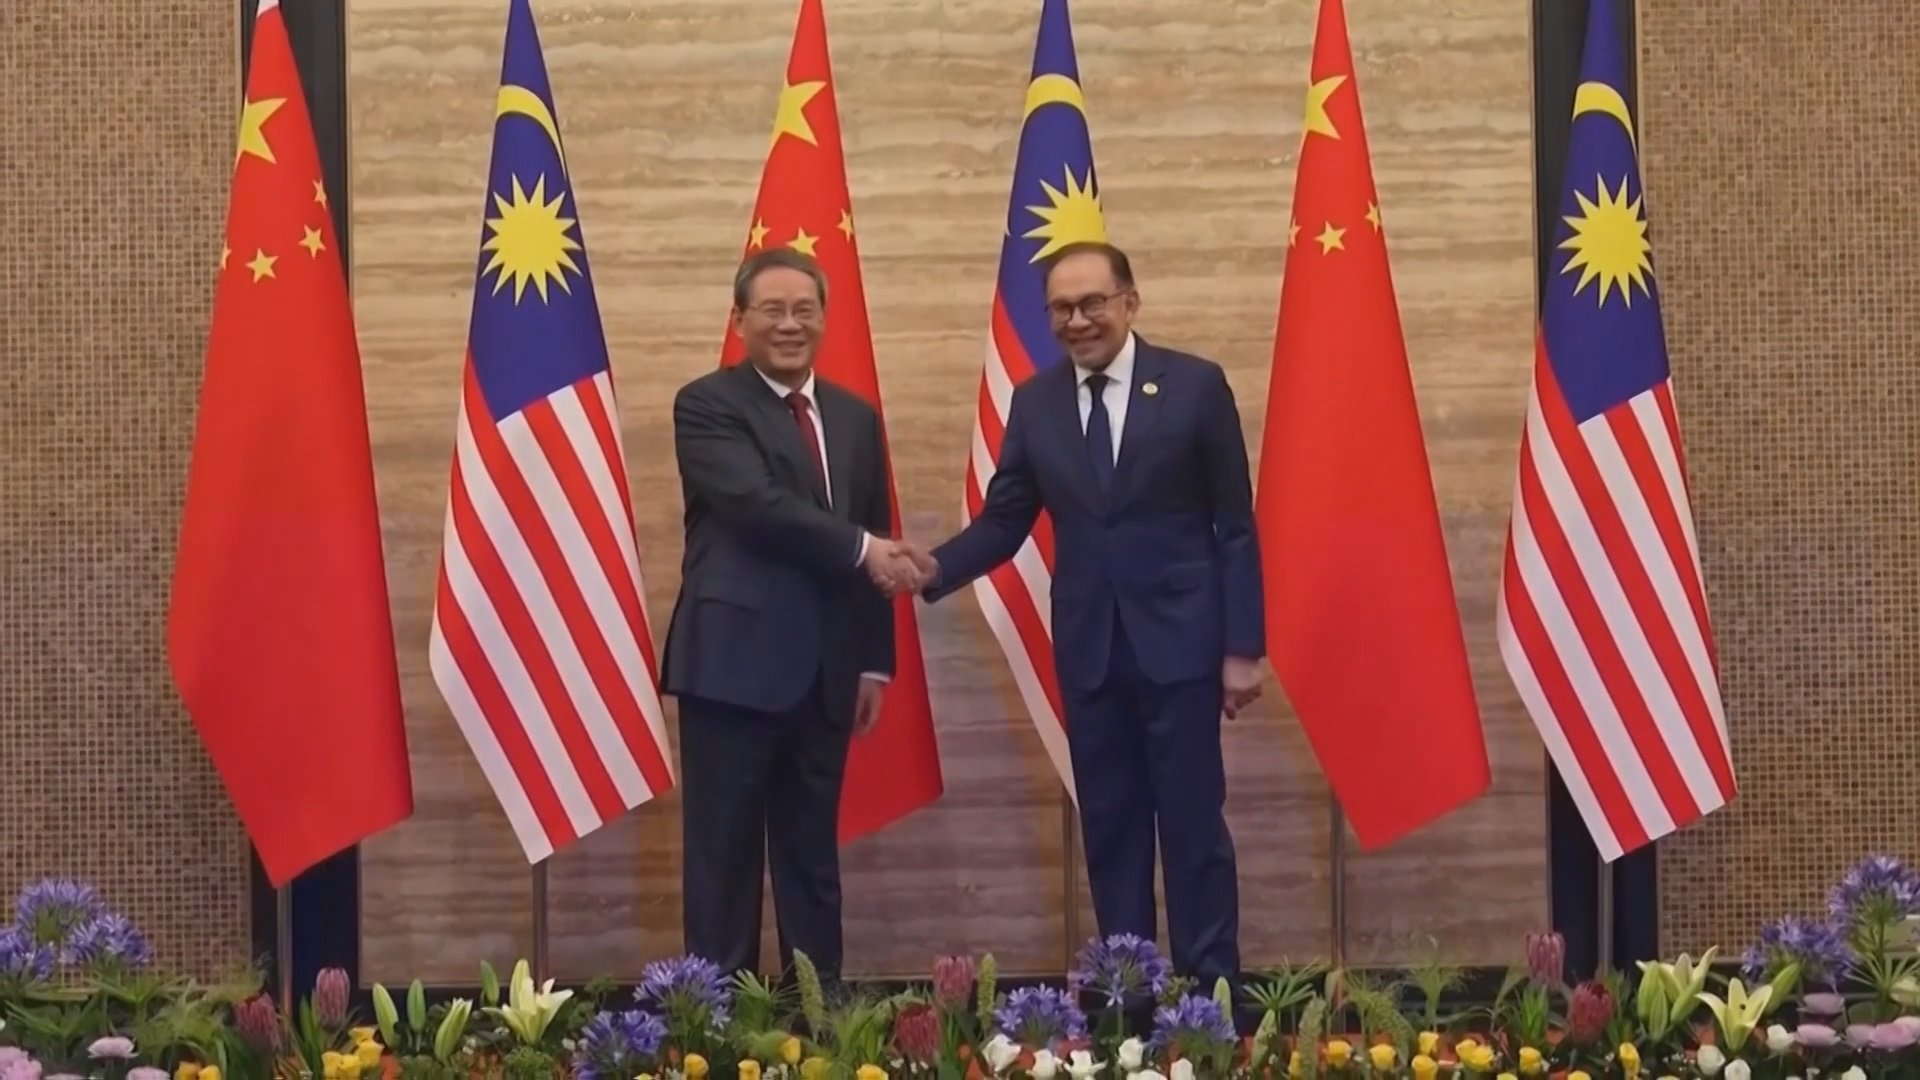 中国・李強首相「南シナ海問題は二国間解決を」 フィリピンやアメリカ念頭にけん制